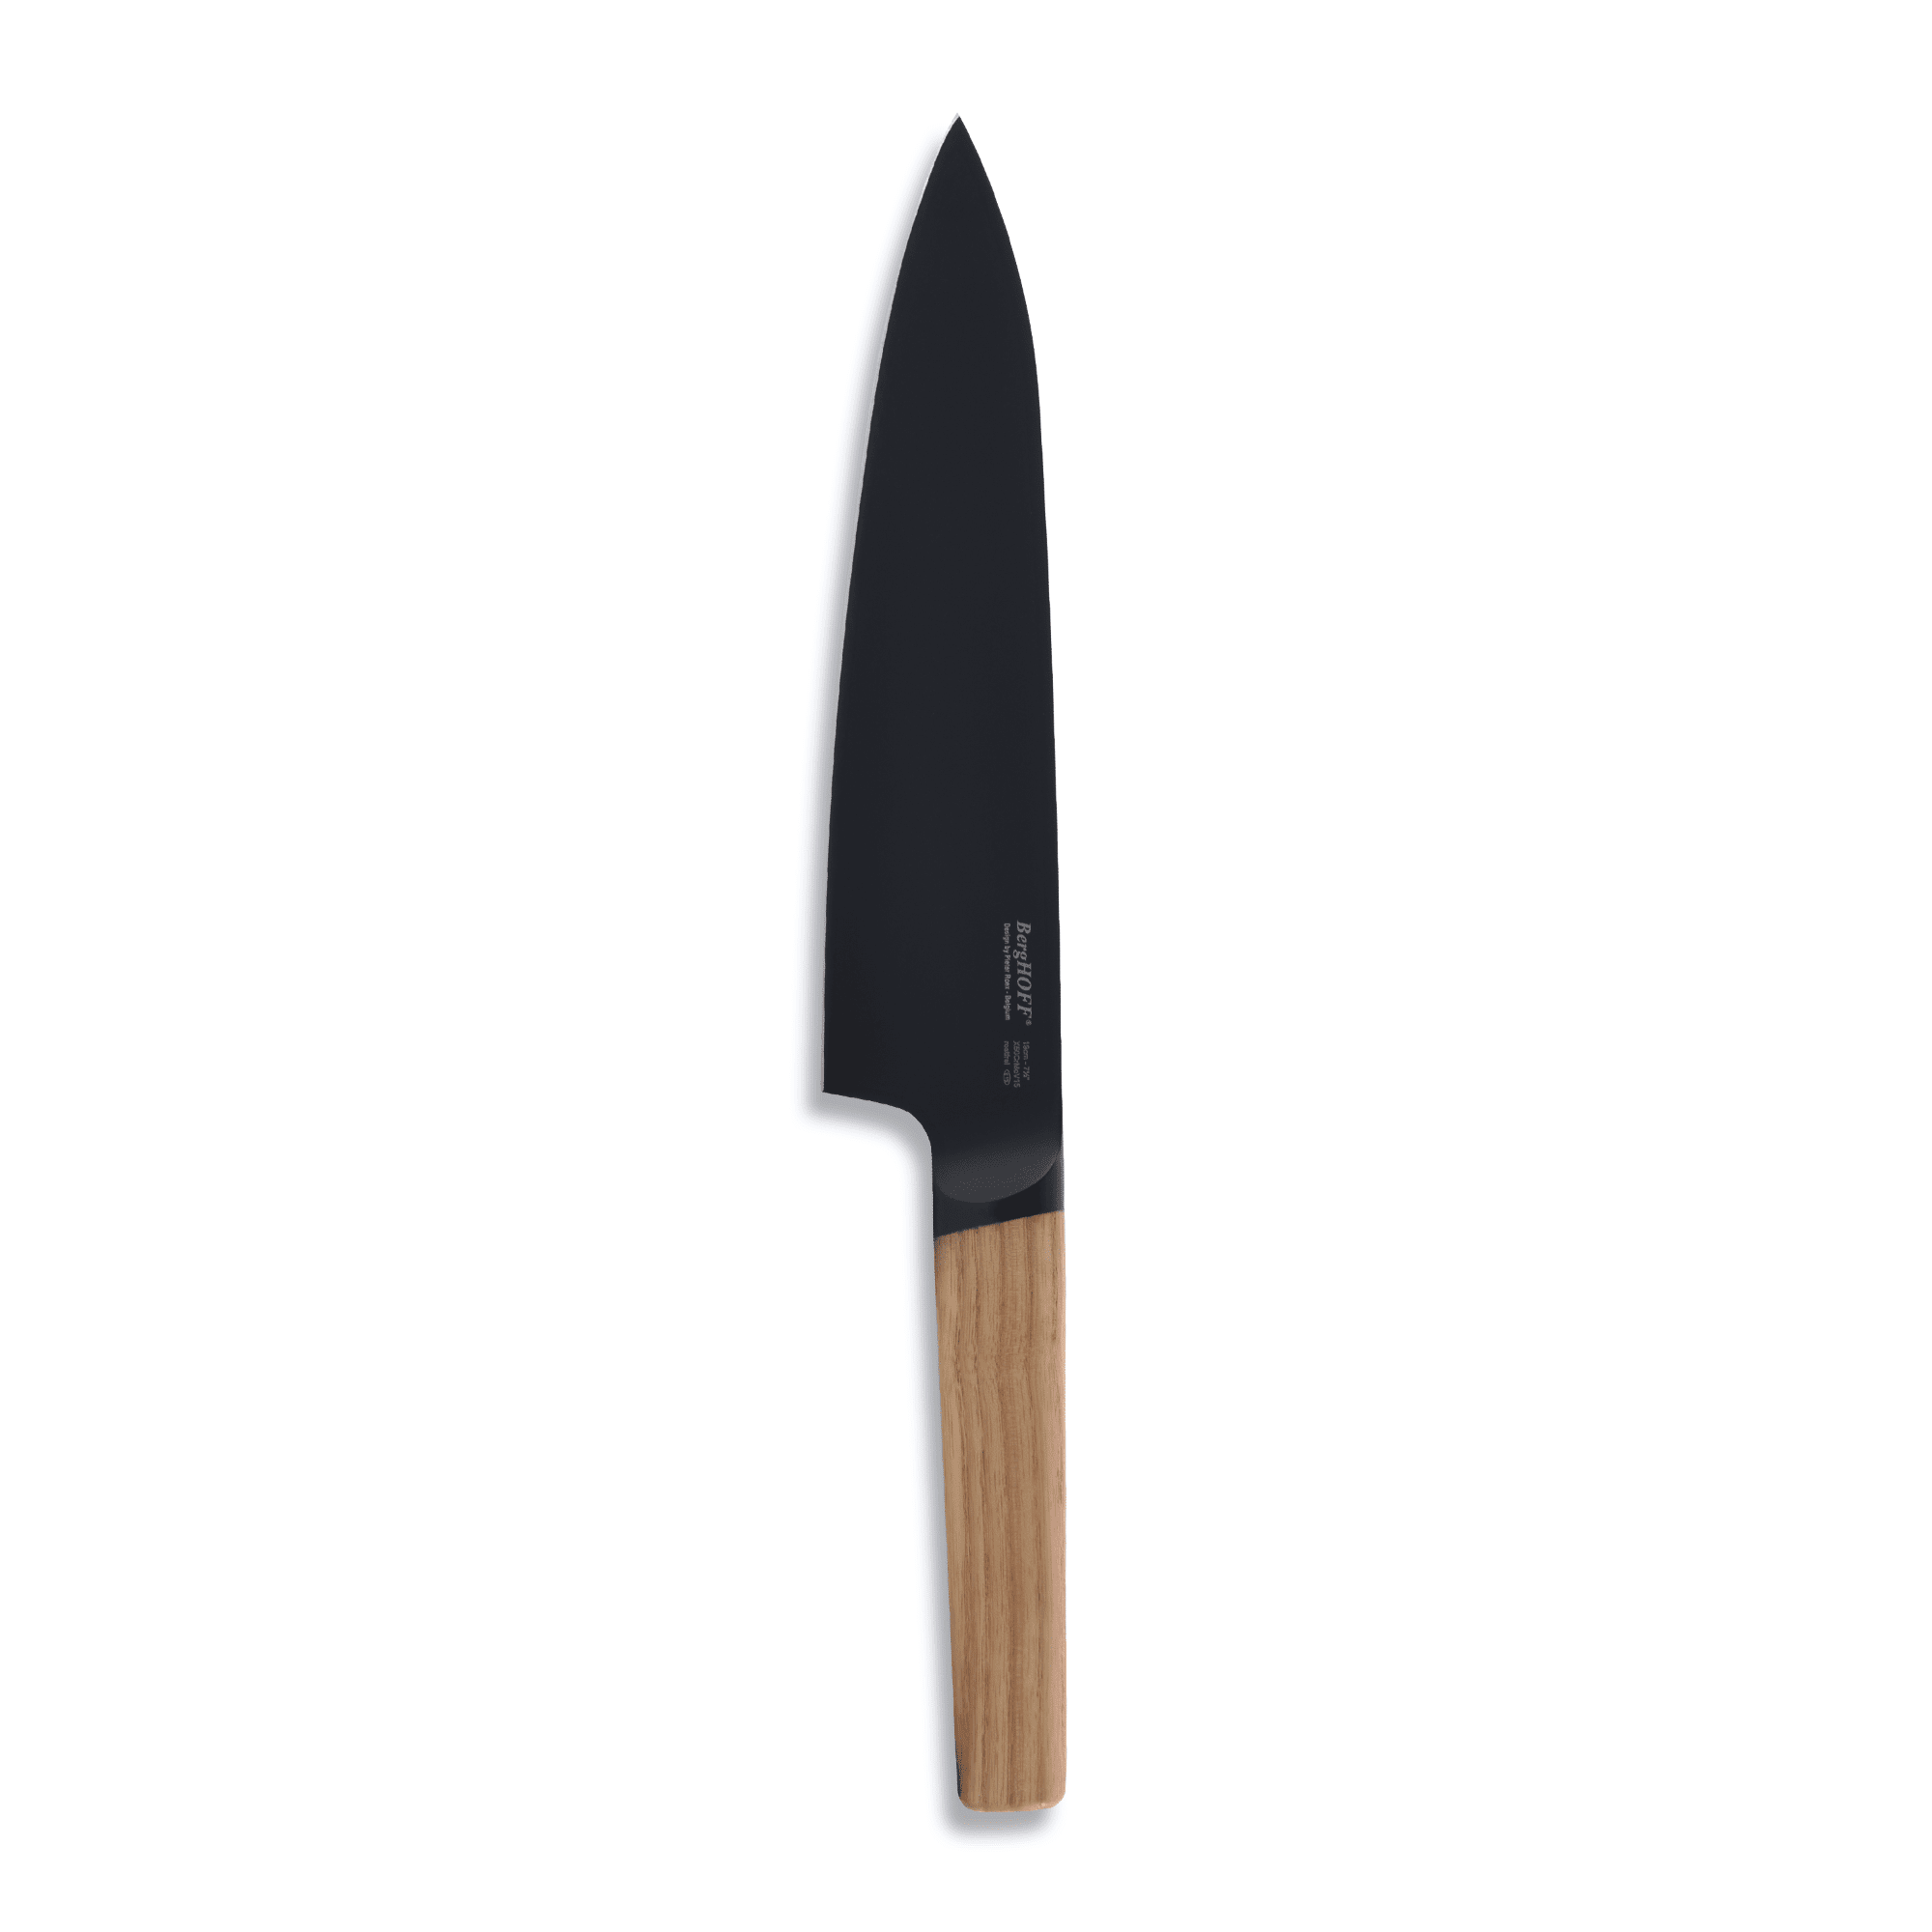 BergHOFF - سكين رون شيف بمقبض خشبي - ستانلس ستيل - 32.5 سم - 6600099